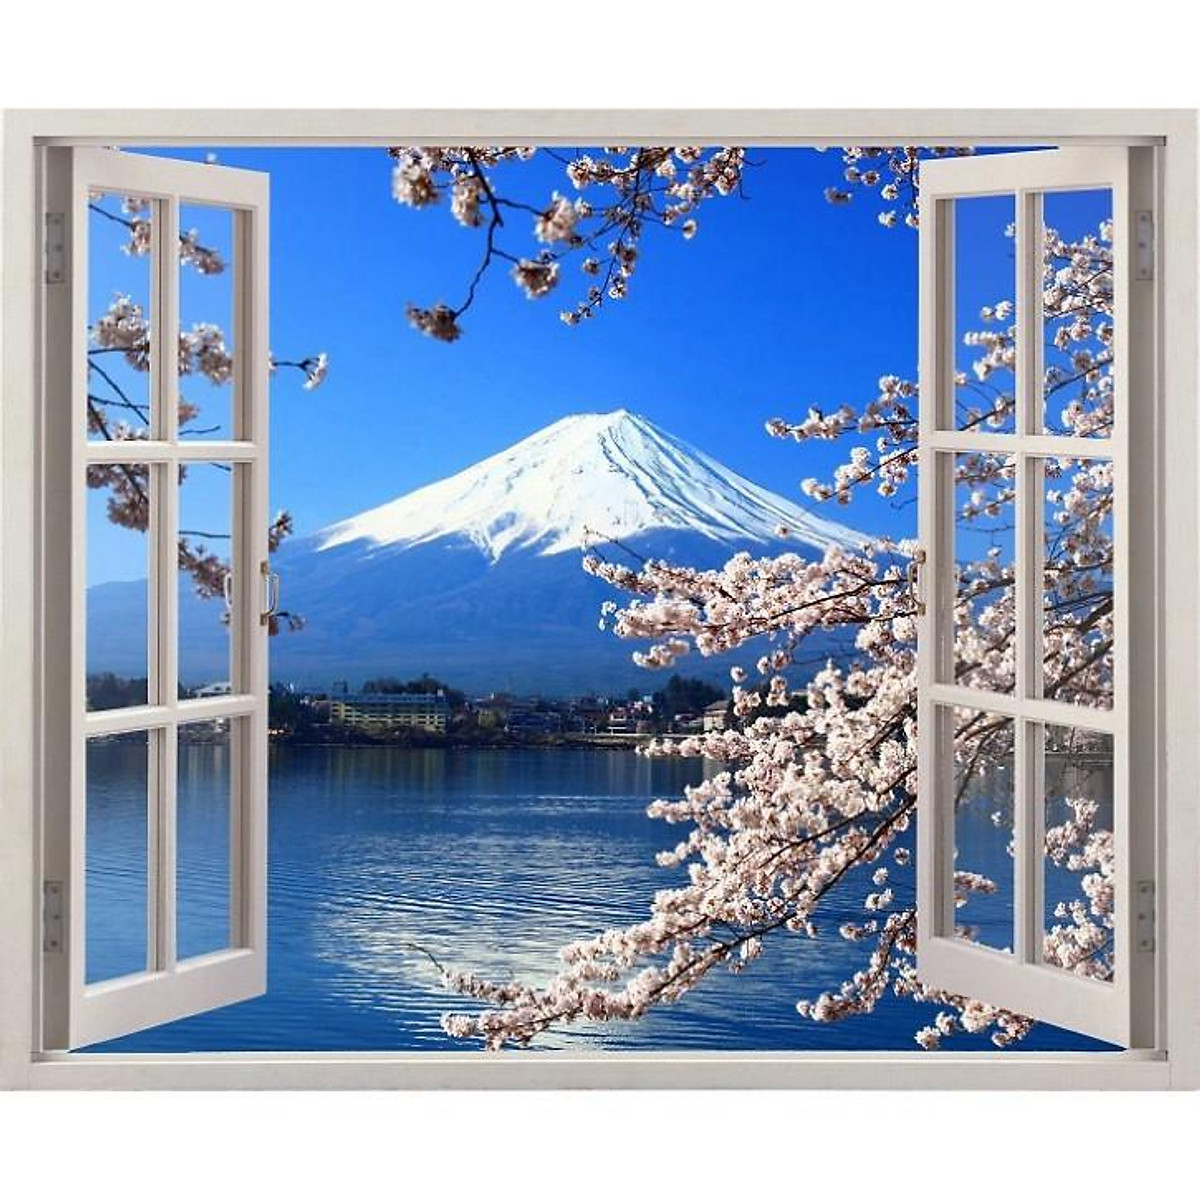 Cảnh núi Phú Sĩ to lớn và hùng vĩ sẽ giúp bạn tìm được sự yên bình tâm hồn trong không gian sống. Tranh dán tường cho không gian thêm sắc màu và đem lại cảm giác thật gần gũi với thiên nhiên.